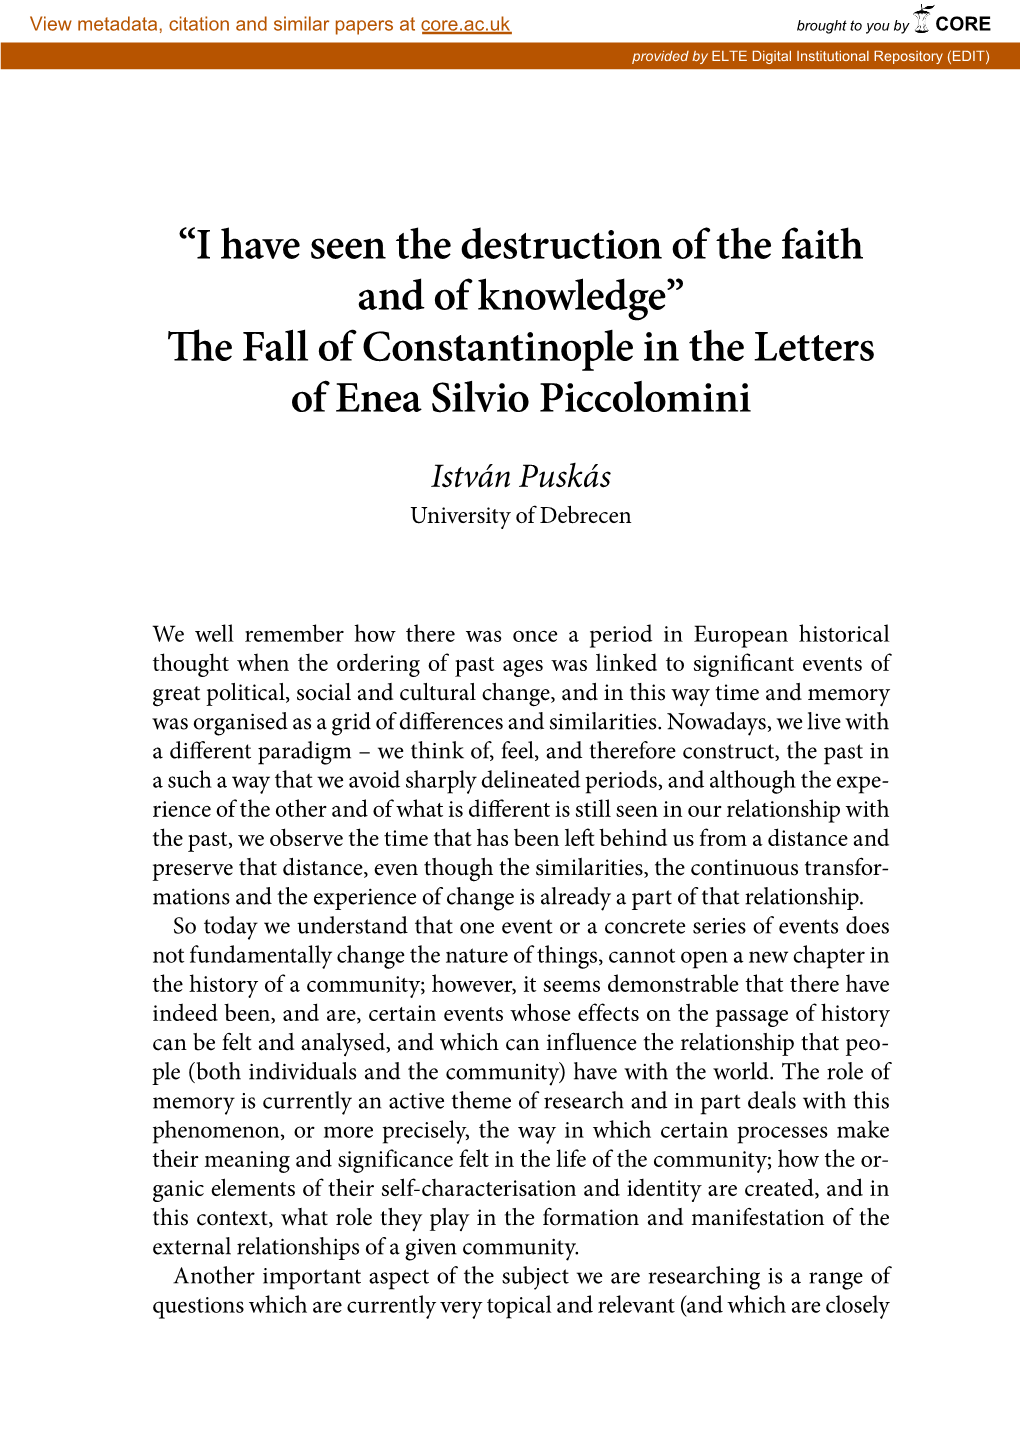 The Fall of Constantinople in the Letters of Enea Silvio Piccolo